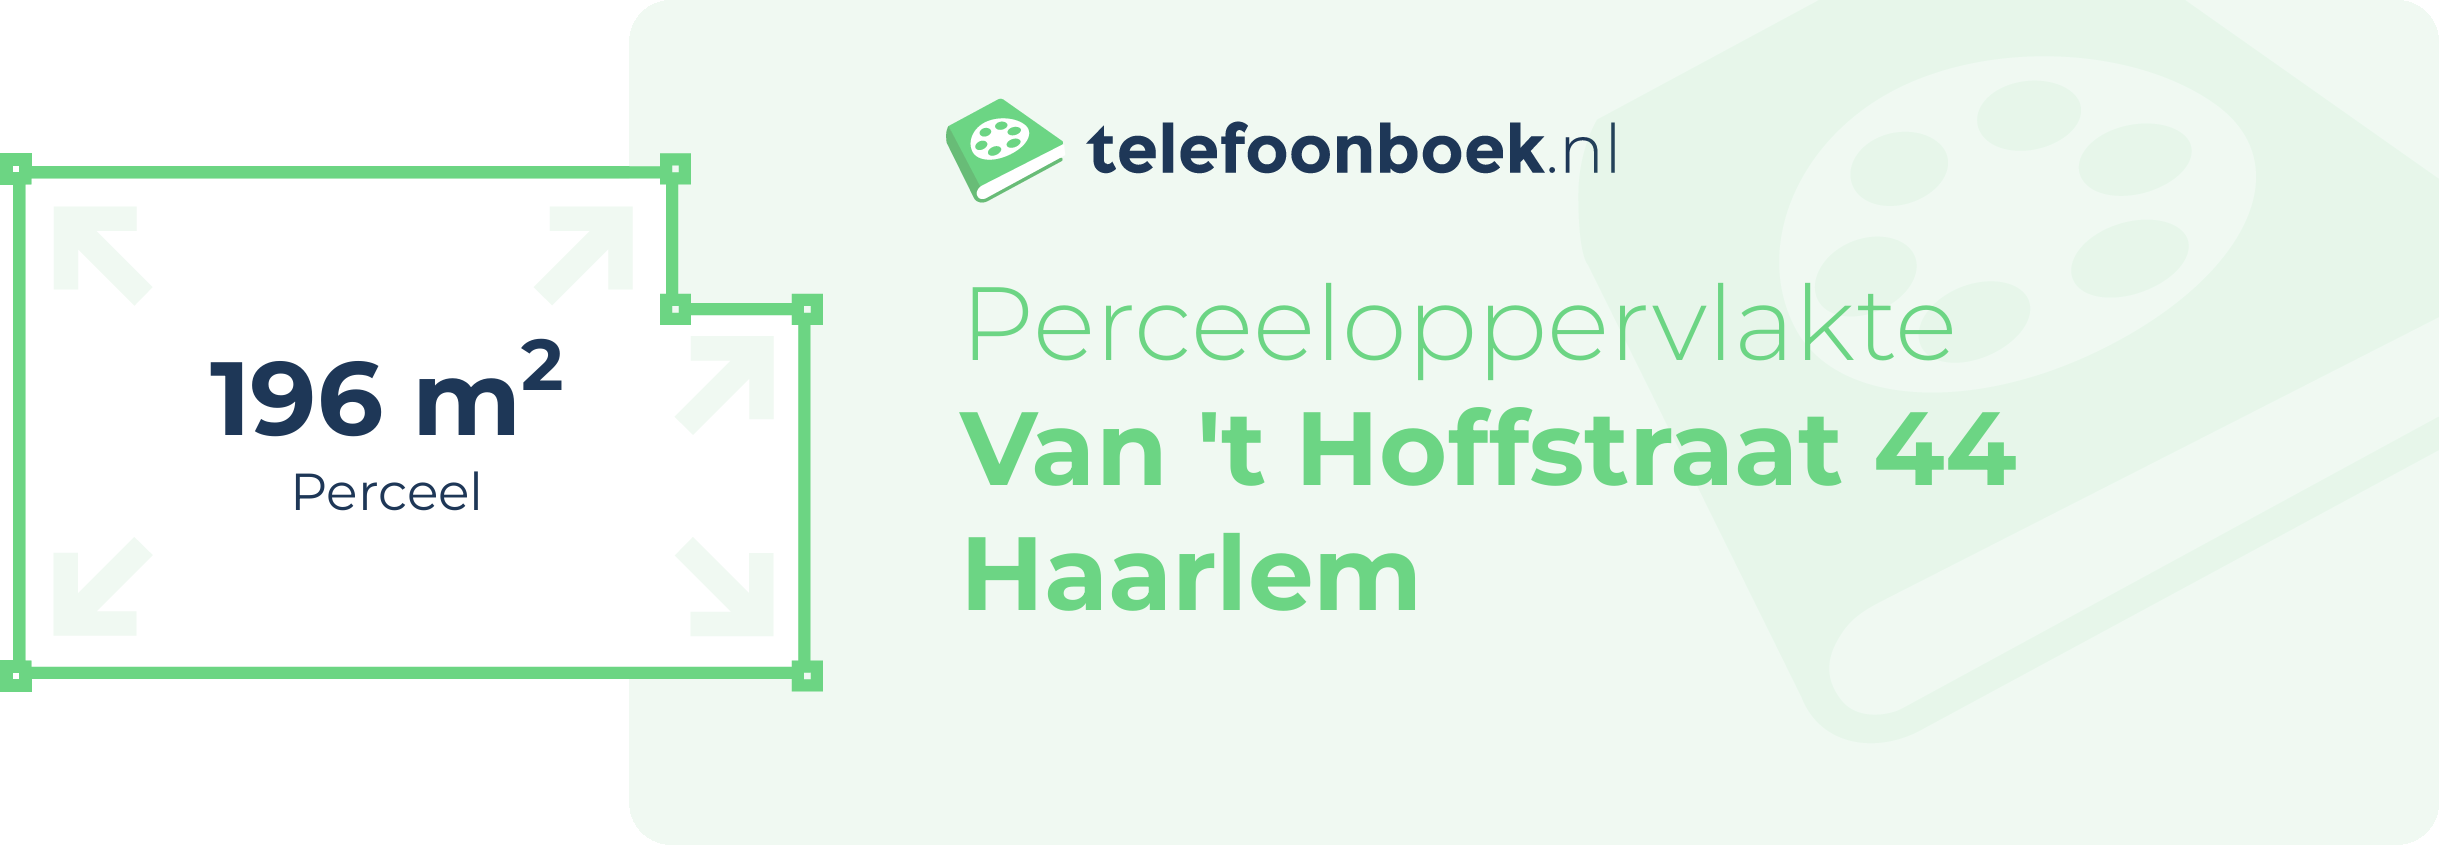 Perceeloppervlakte Van 't Hoffstraat 44 Haarlem